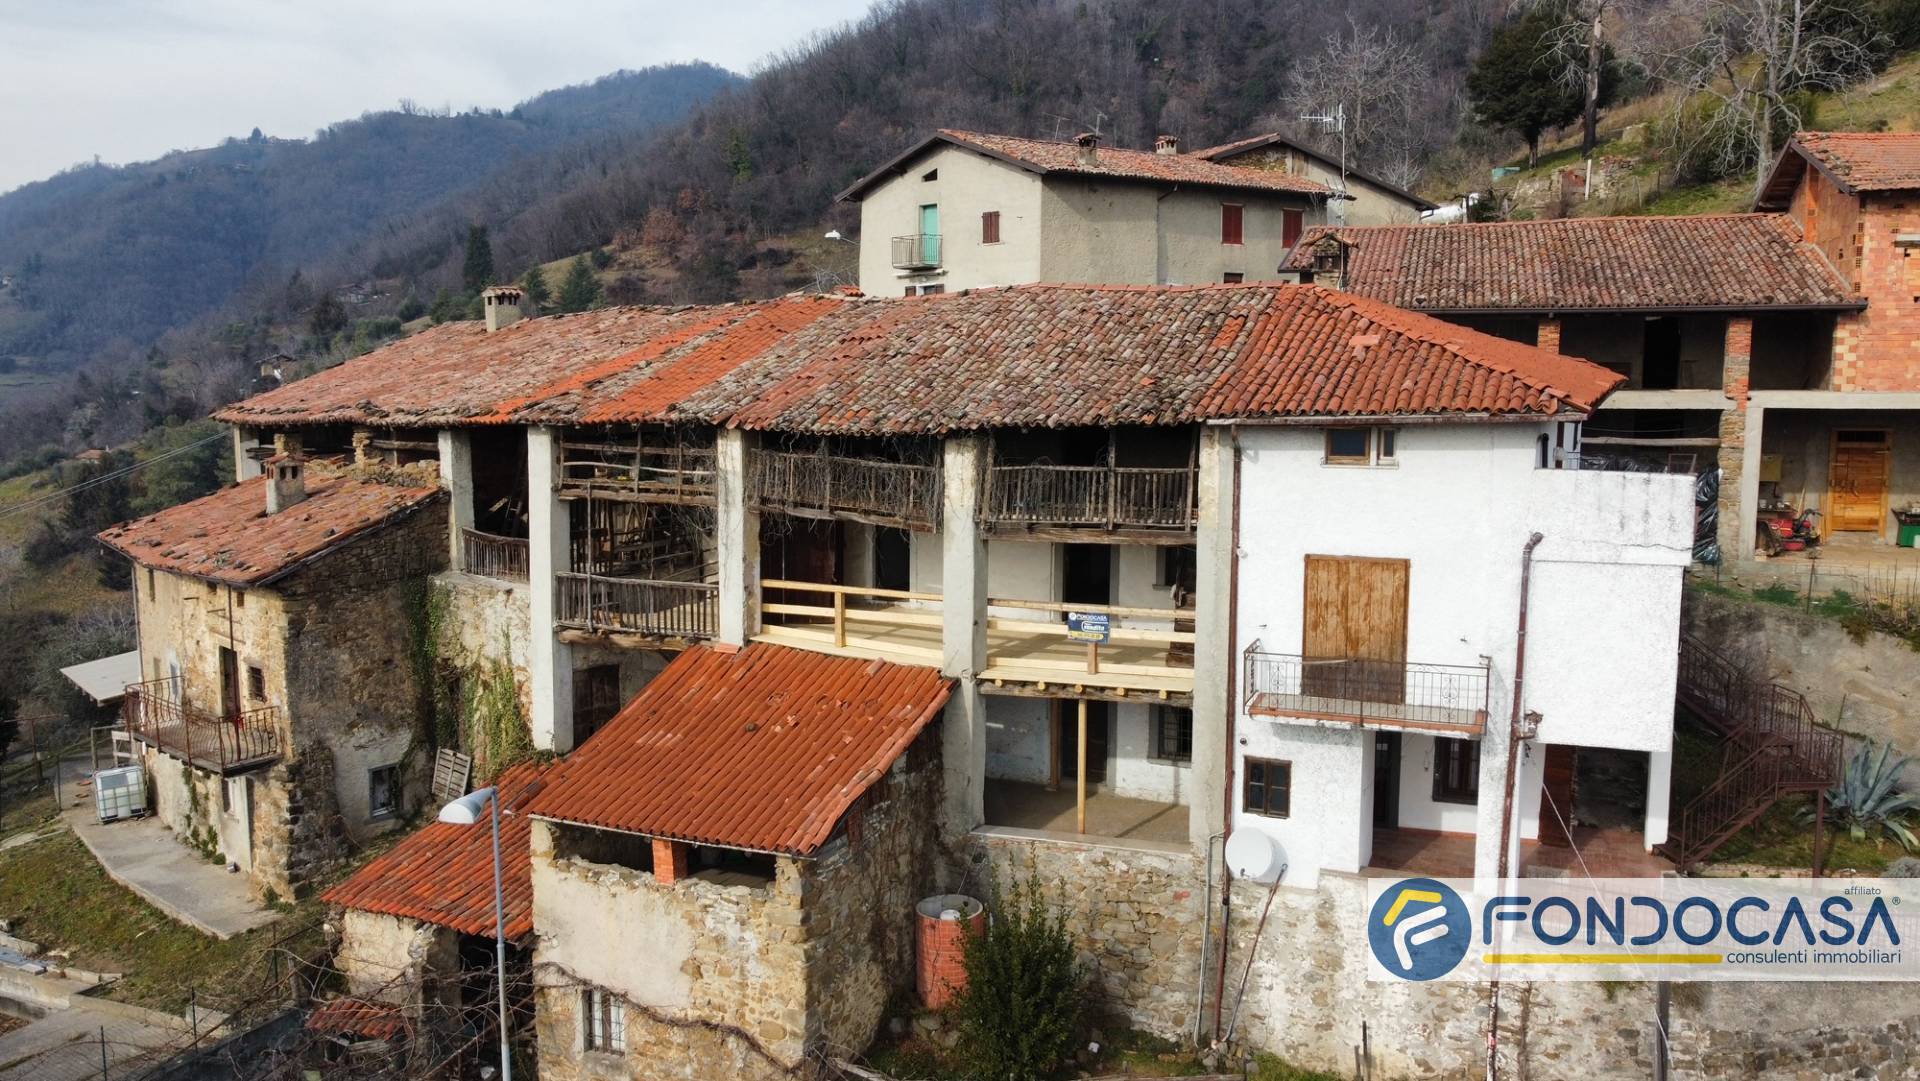 Rustico / Casale in vendita a Adrara San Martino, 6 locali, prezzo € 25.000 | PortaleAgenzieImmobiliari.it